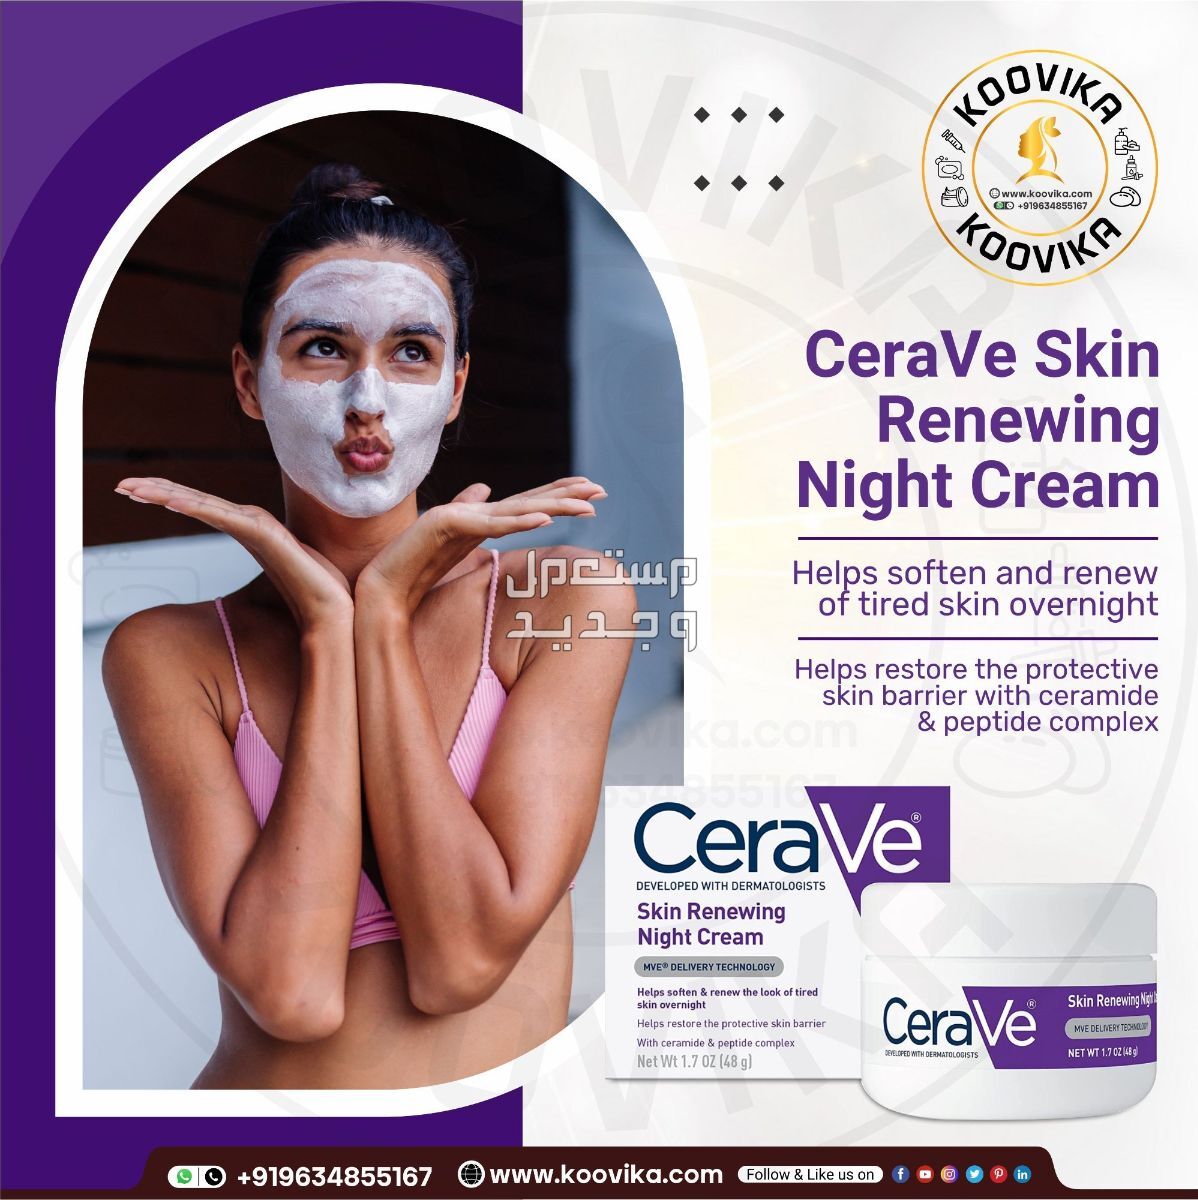 أفضل كريم ليلي للعناية بالبشرة لعام 2023 في البحرين شكل كريم ليلي من CeraVe Skin Renewing Night Cream على البشرة